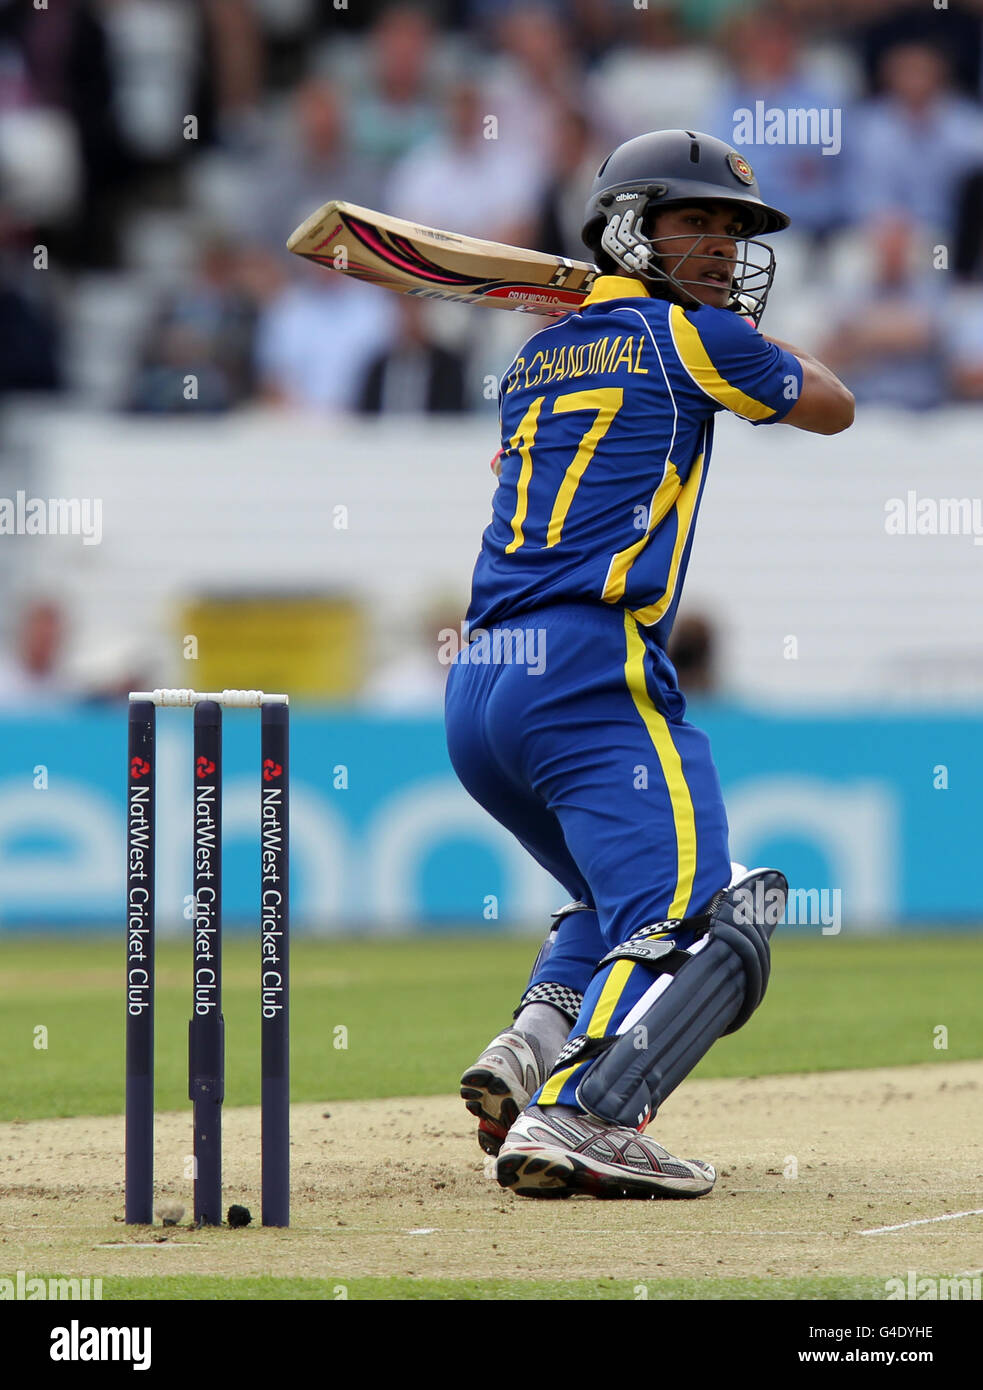 Cricket - 2011 NatWest Series - seconda Giornata Internazionale - Inghilterra / Sri Lanka - Headingley. Dinesh Chandimal dello Sri Lanka matti contro l'Inghilterra Foto Stock